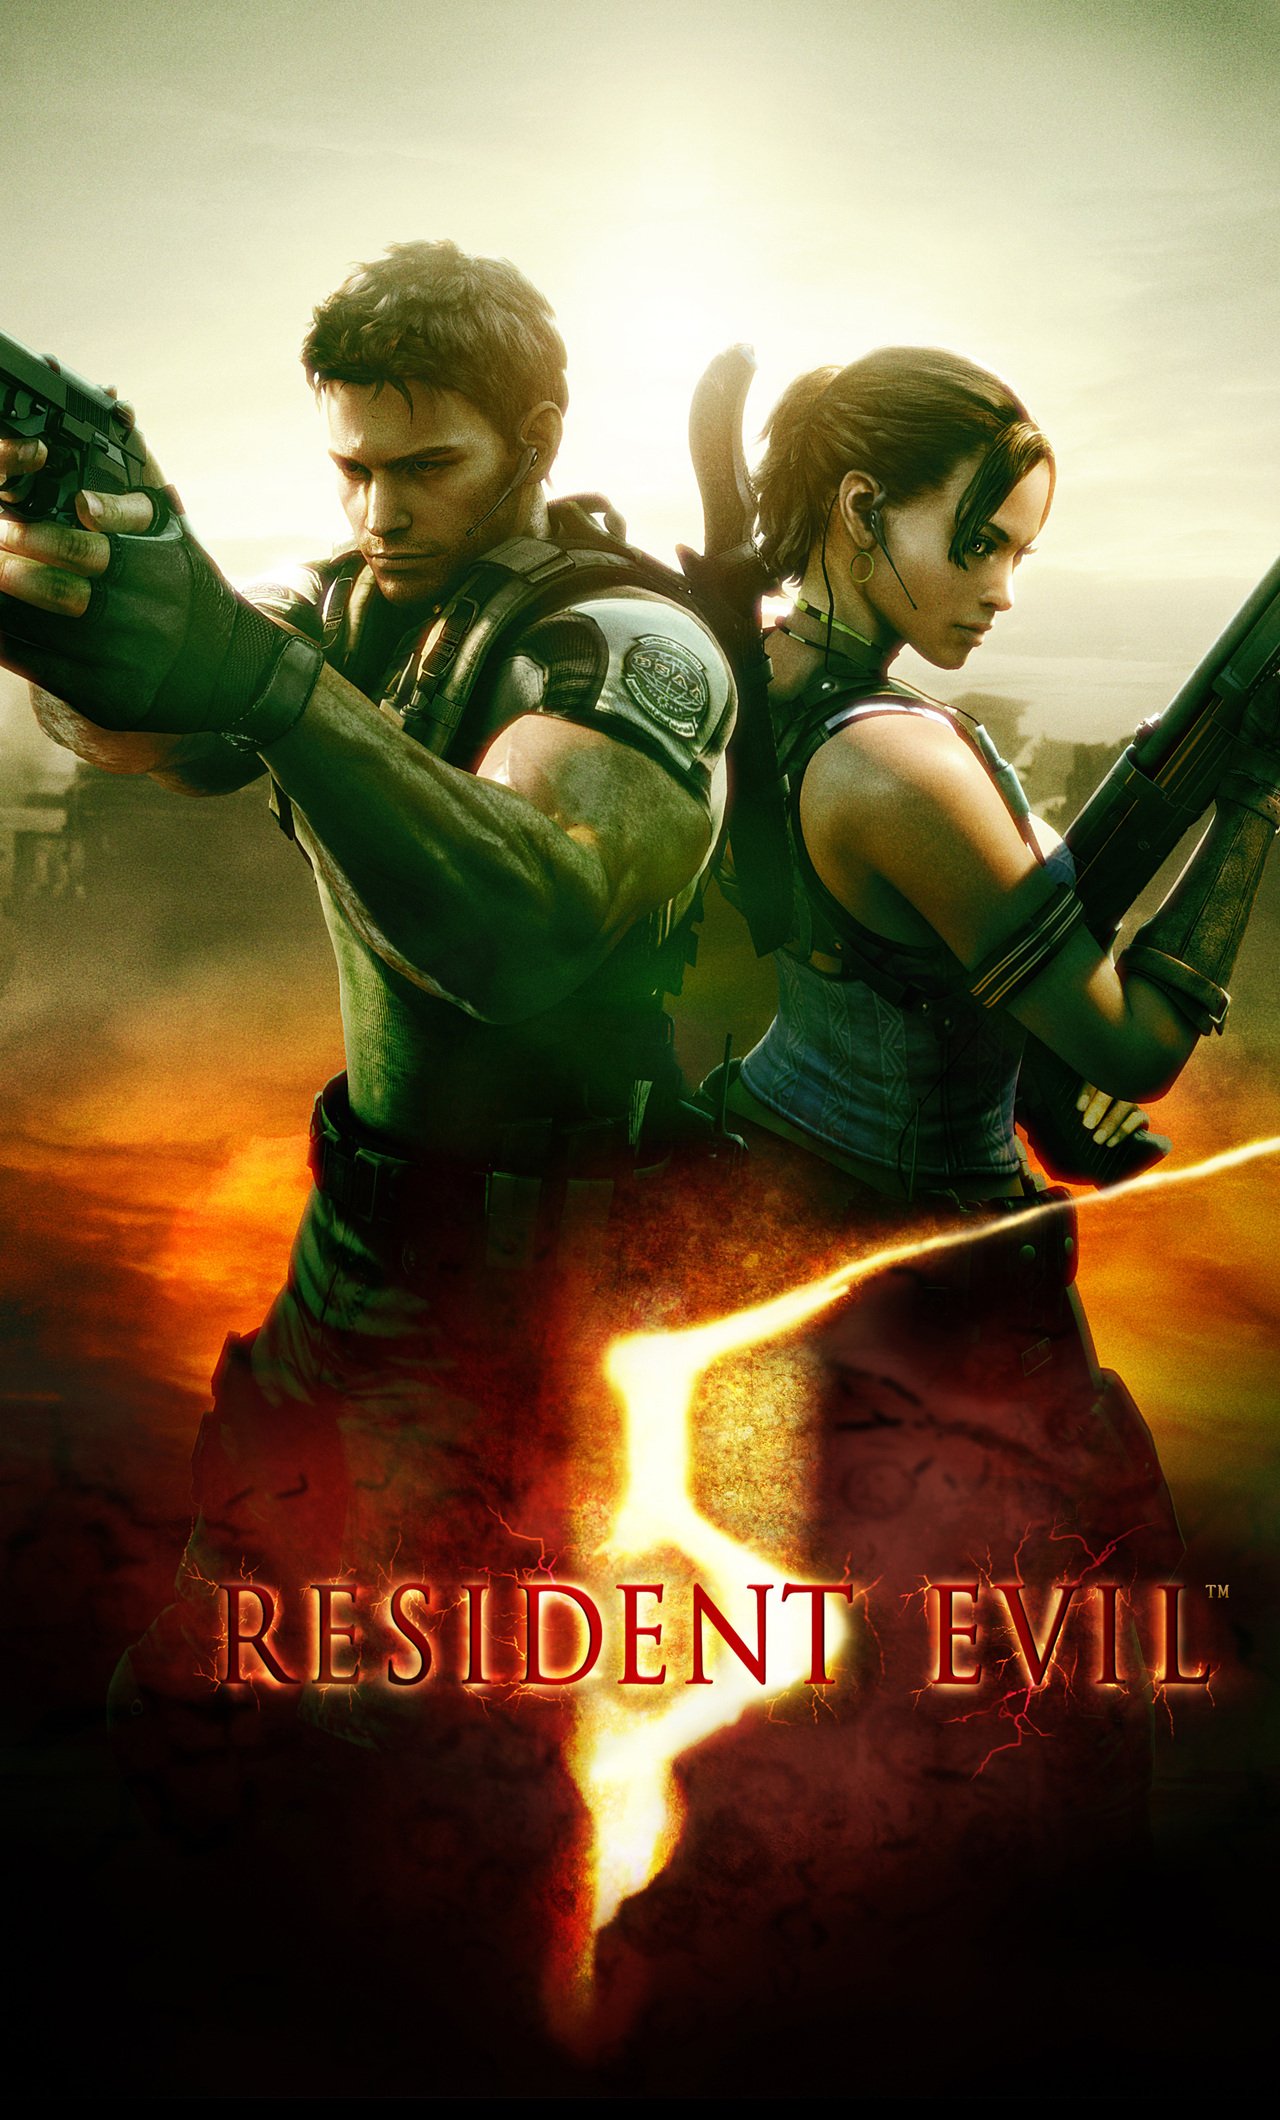 VegasPlayz on Twitter Resident Evil 1 2 3 REmake Phone wallpaper i made  REBHFun httpstco1tdwMXskje  Twitter